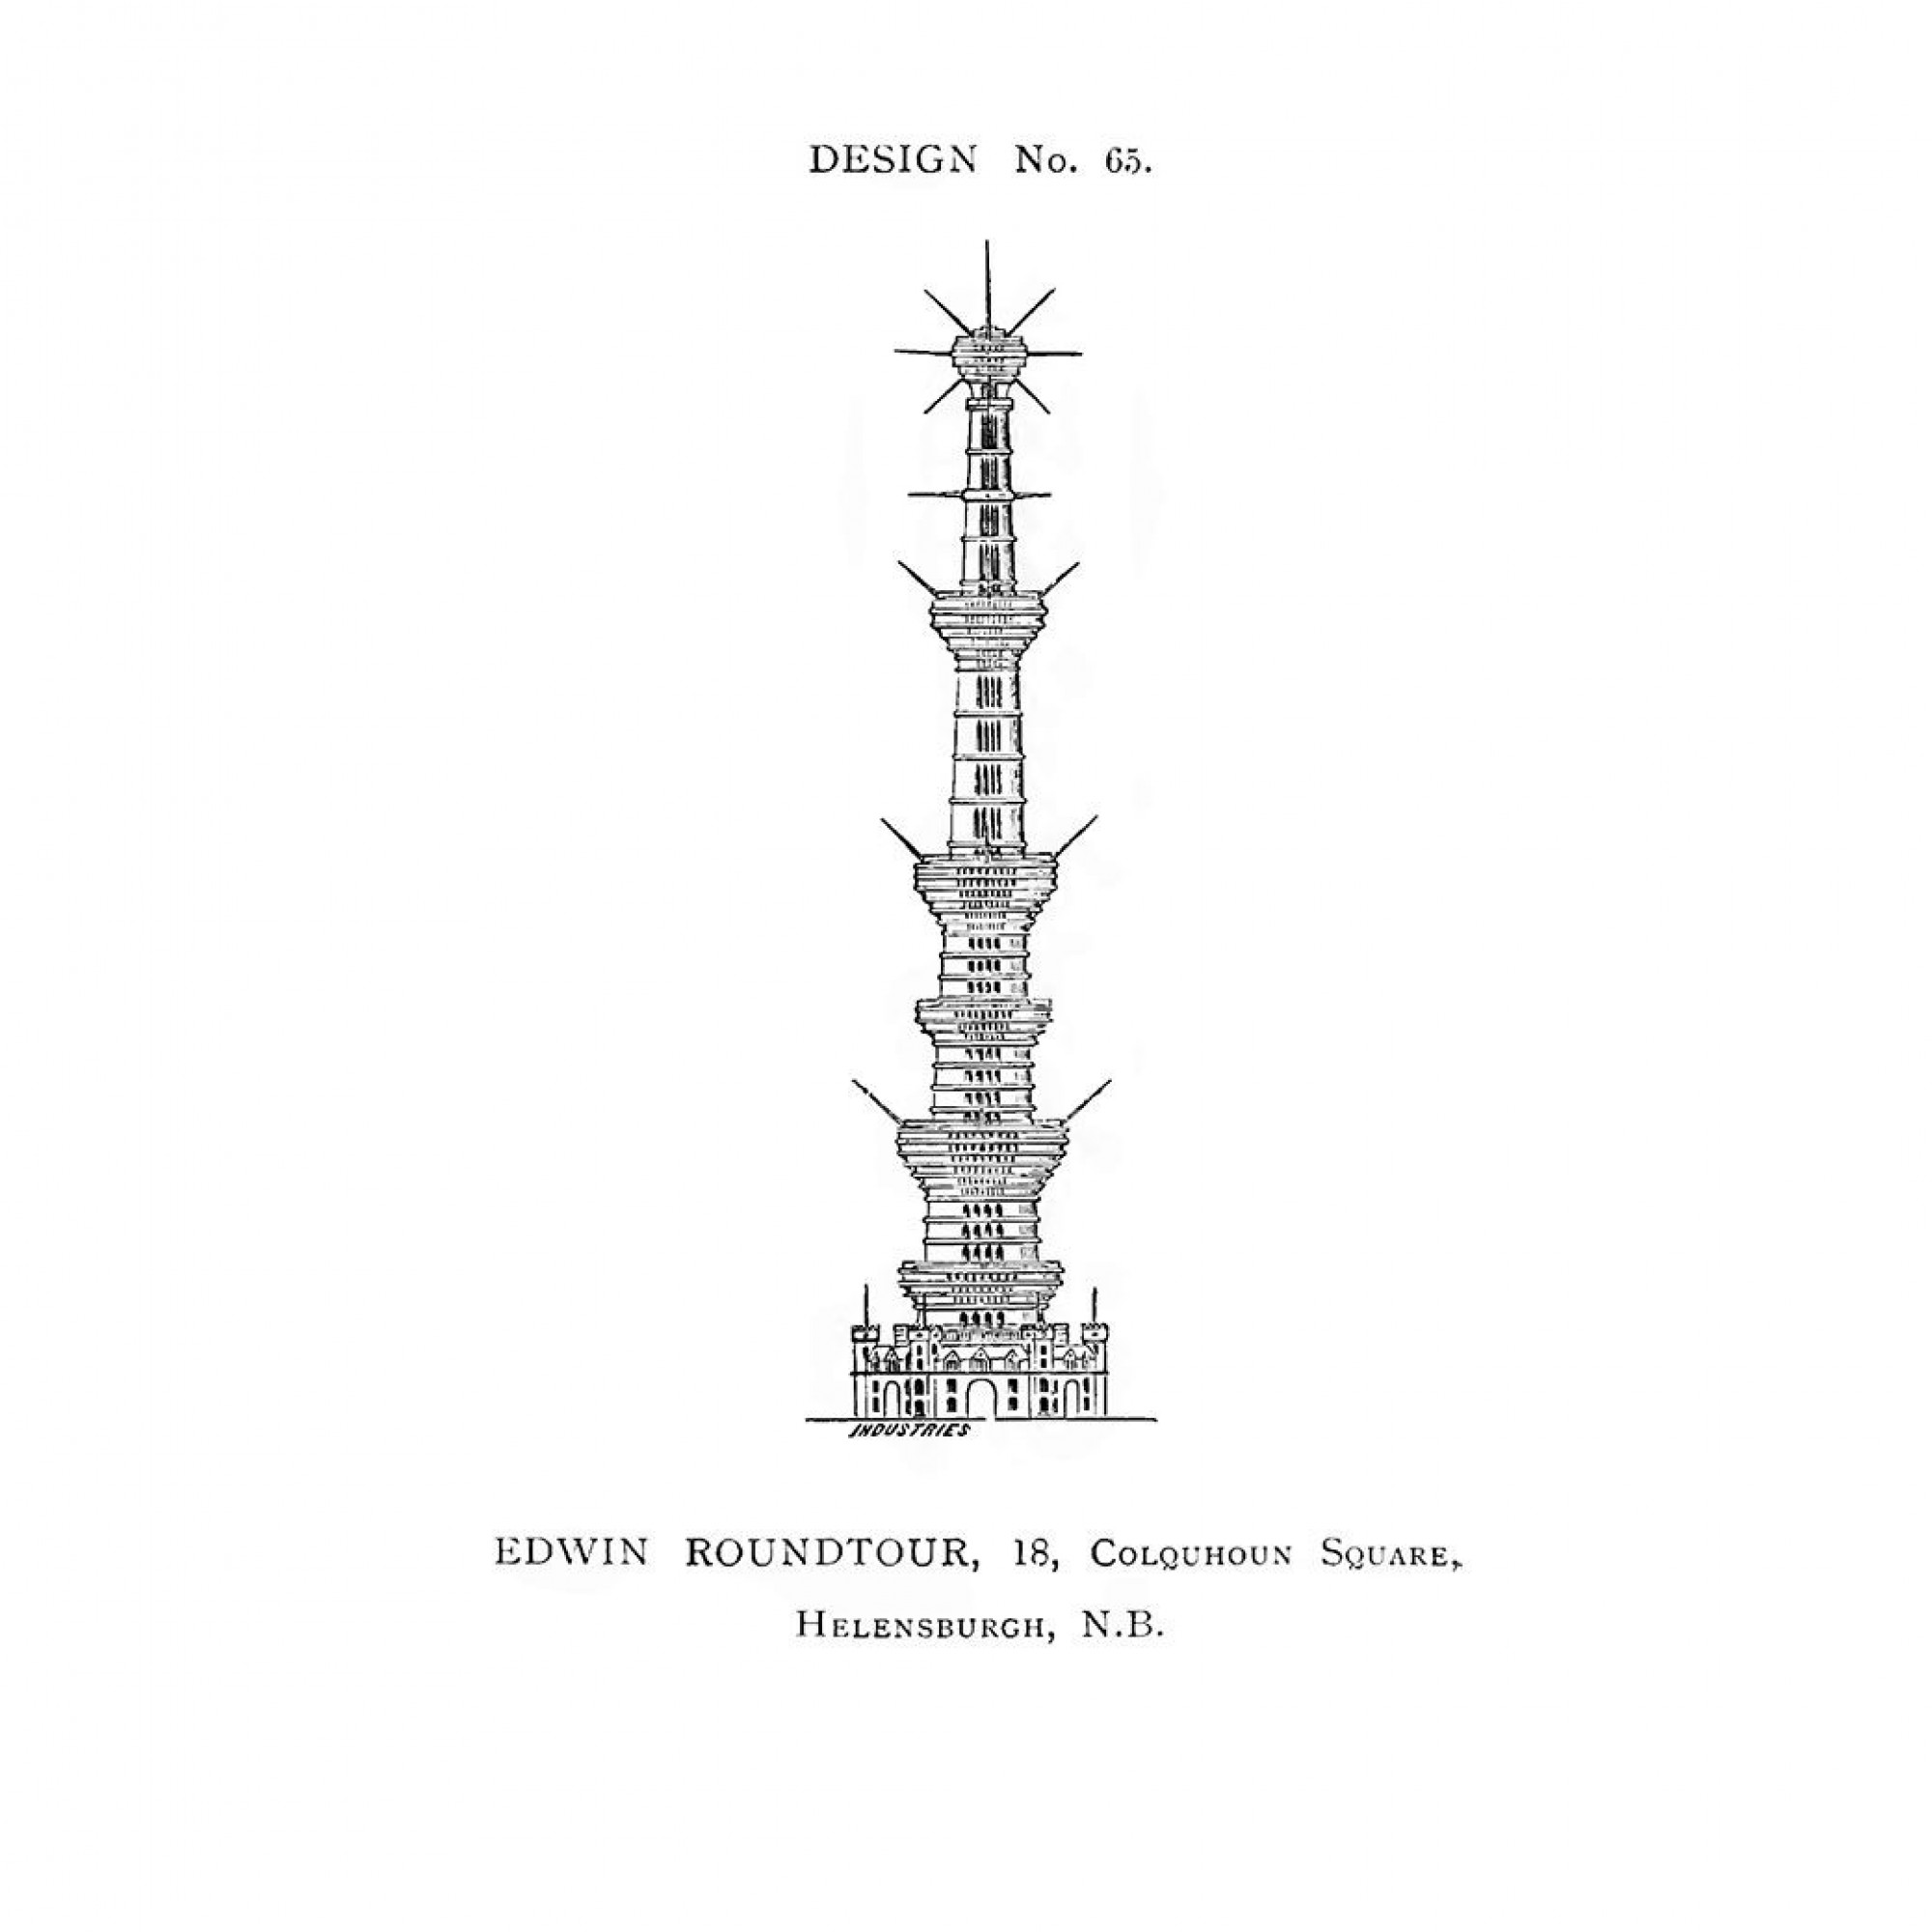 Vorschlag für Watkin's Tower, Zeichnung.